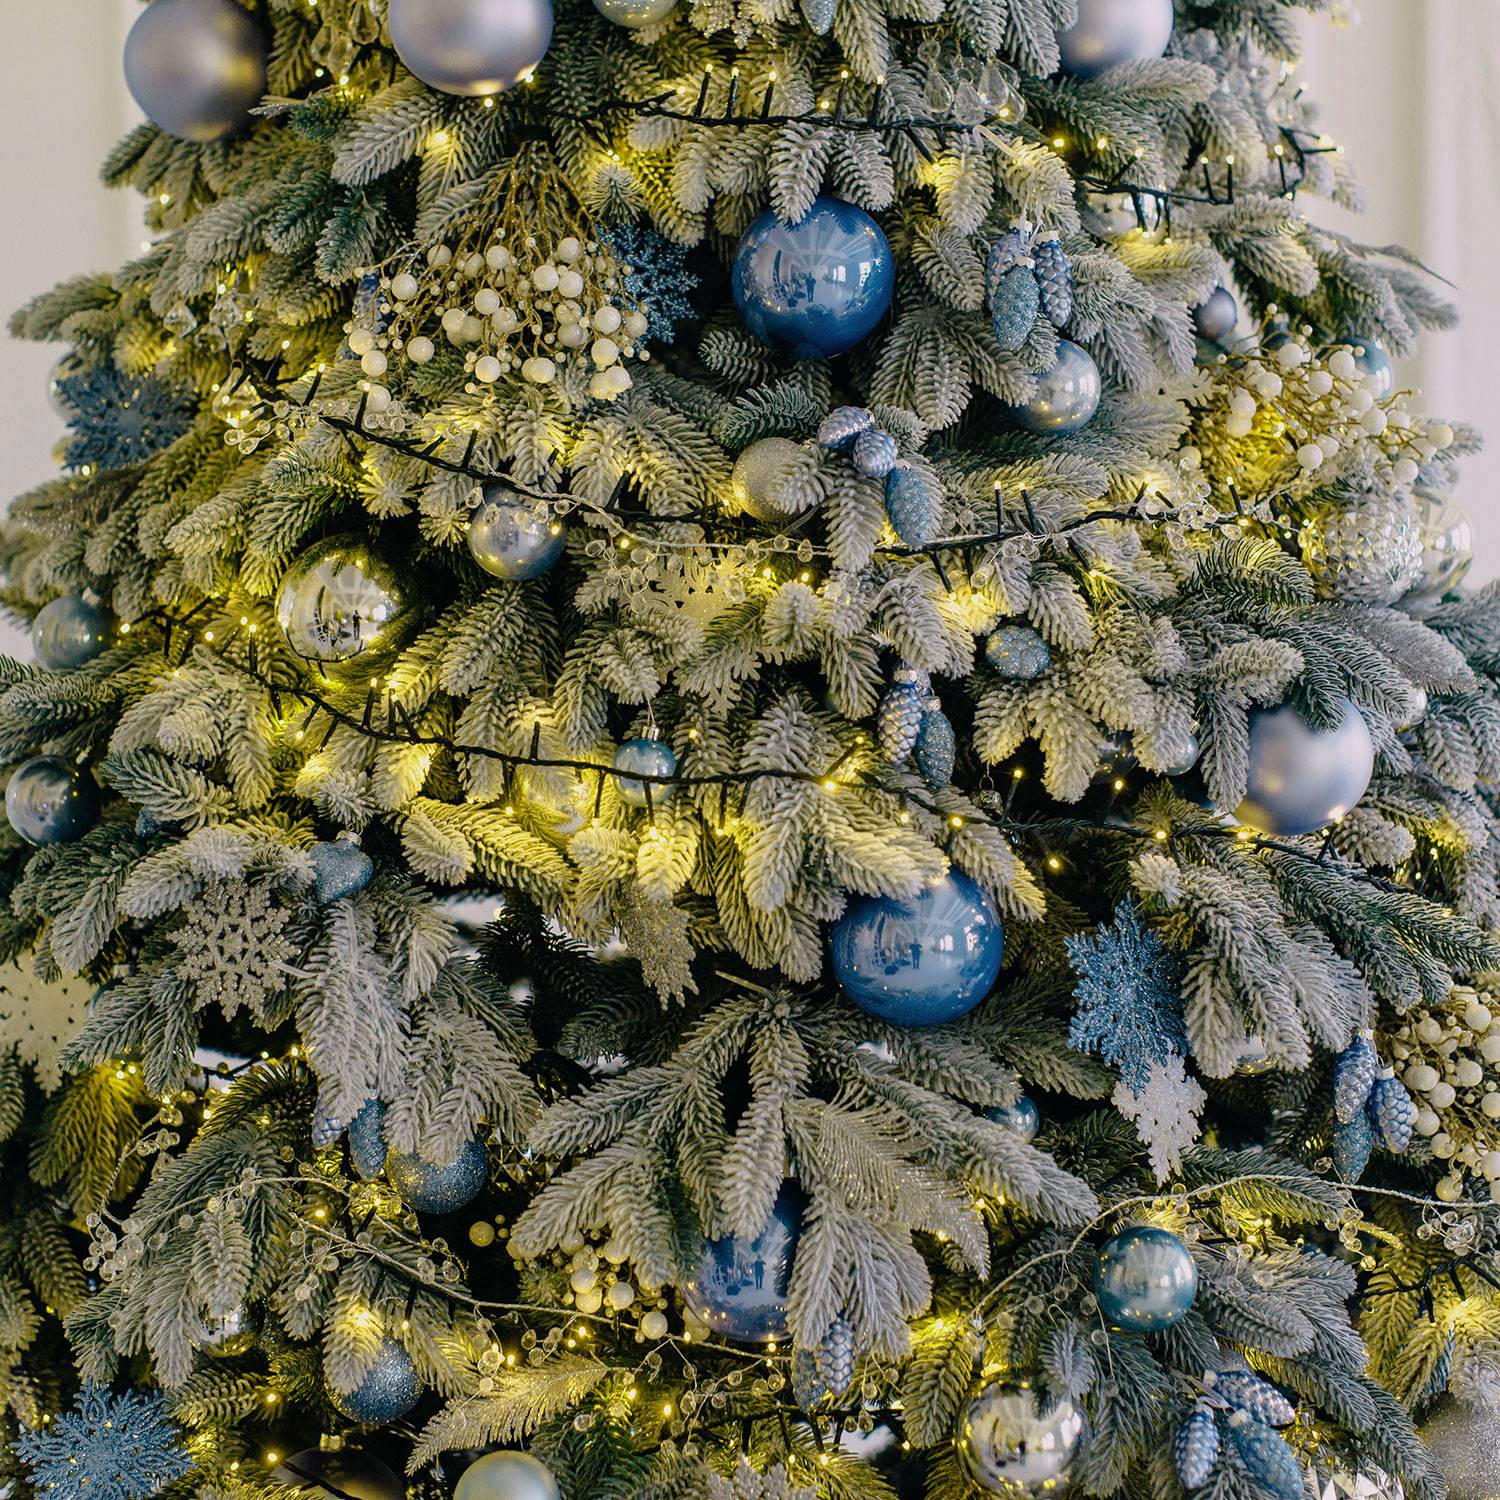 Guirlande électrique Noël blanc chaud- Rideau lumineux led 300 x 70 cm